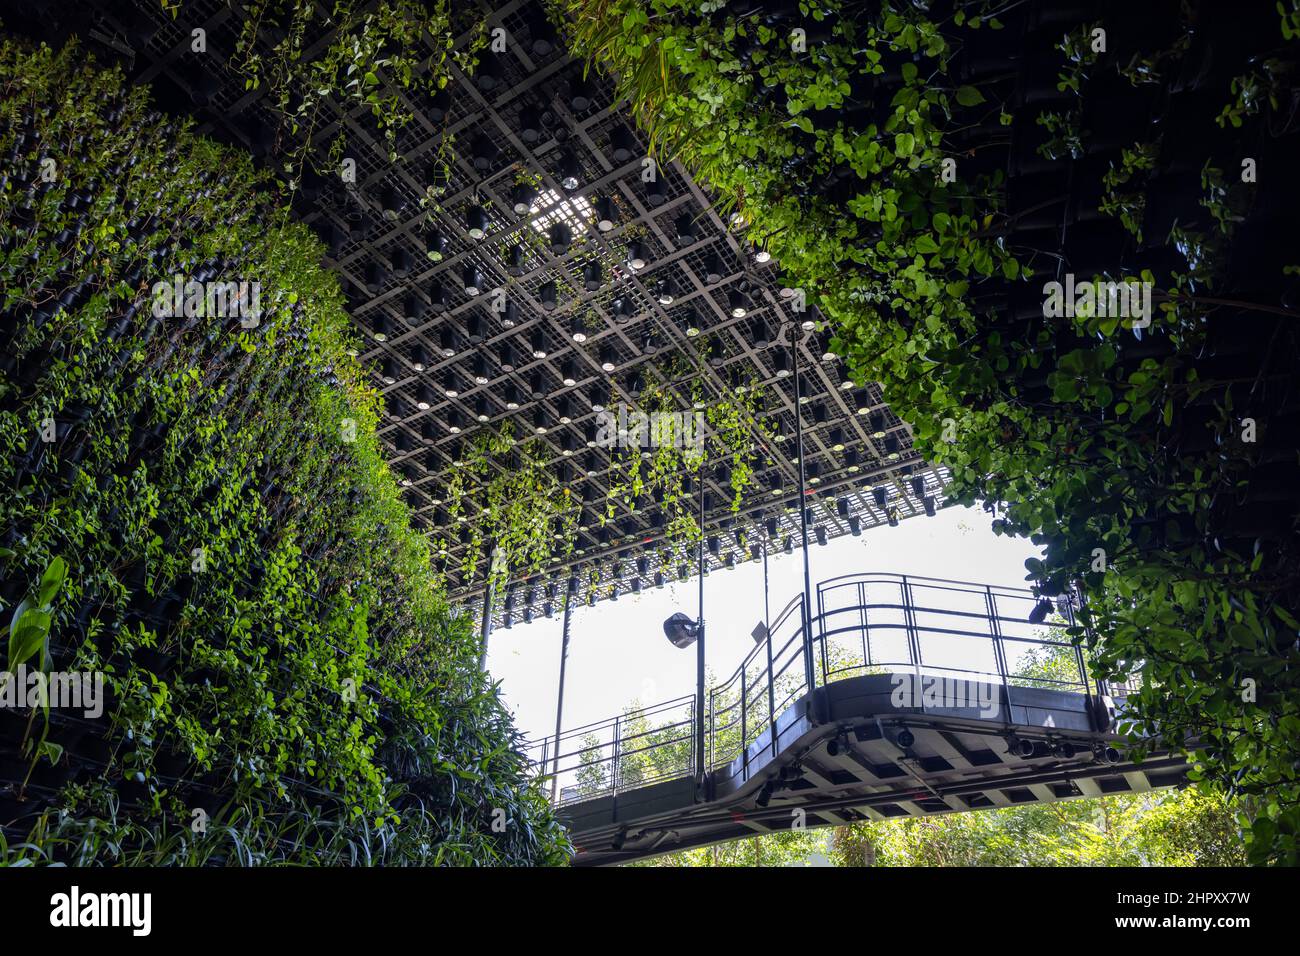 Le magnifique pavillon de Singapour inspiré de la nature dans le quartier de la durabilité à l'EXPO 2020 de Dubaï aux Émirats Arabes Unis. Banque D'Images